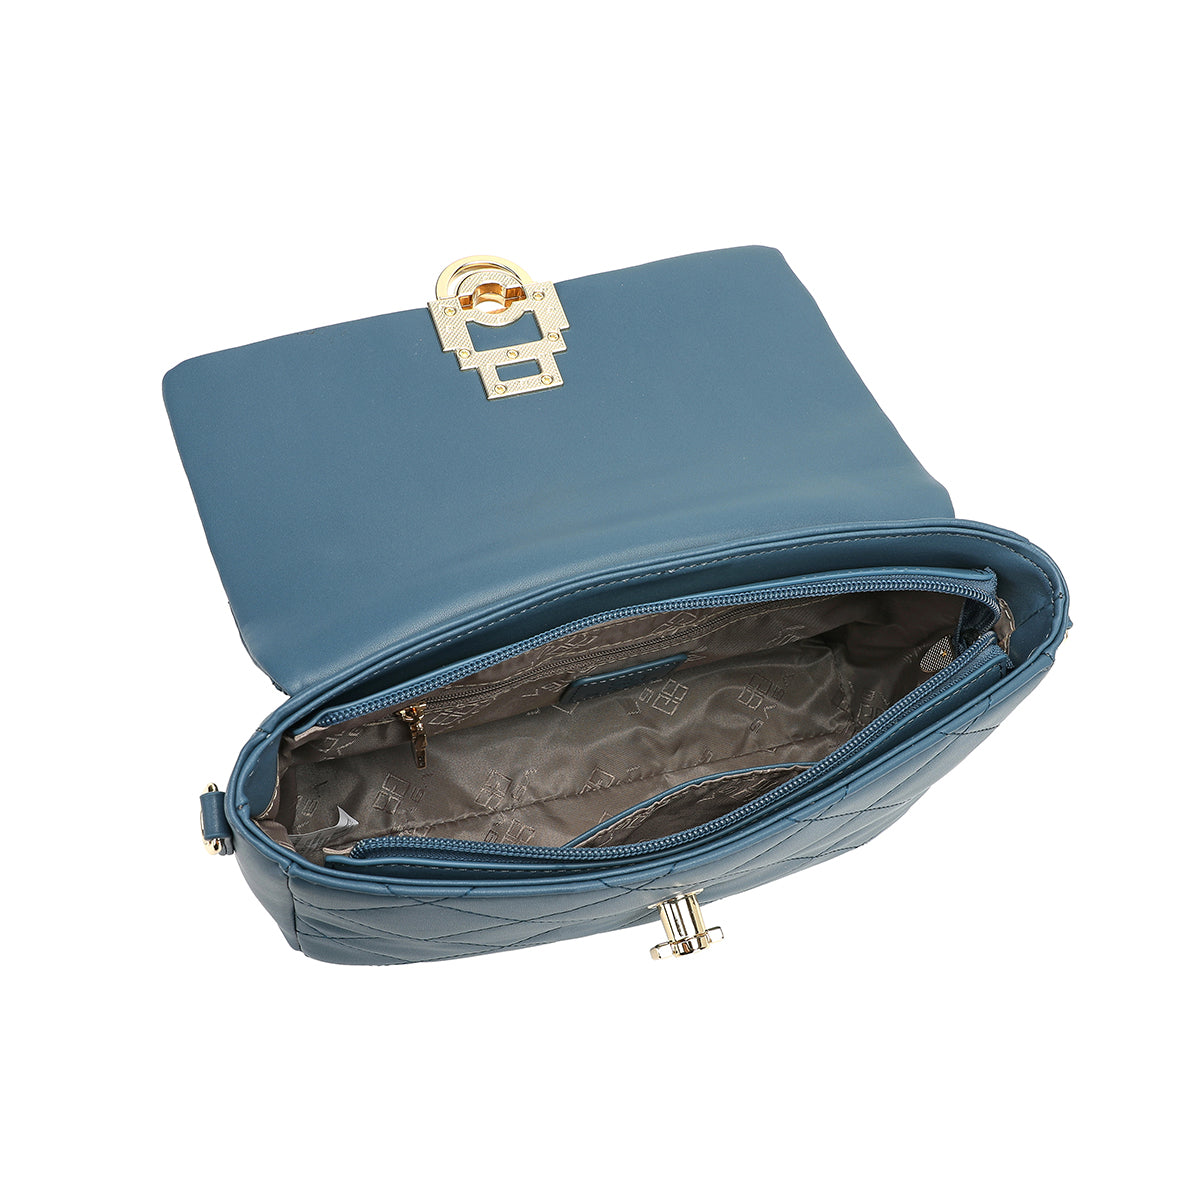 المظهر الداخلي لحقيبة يد ساغا باللون الأزرق الفاتح مع جيوب داخلية وسحاب للإغلاق